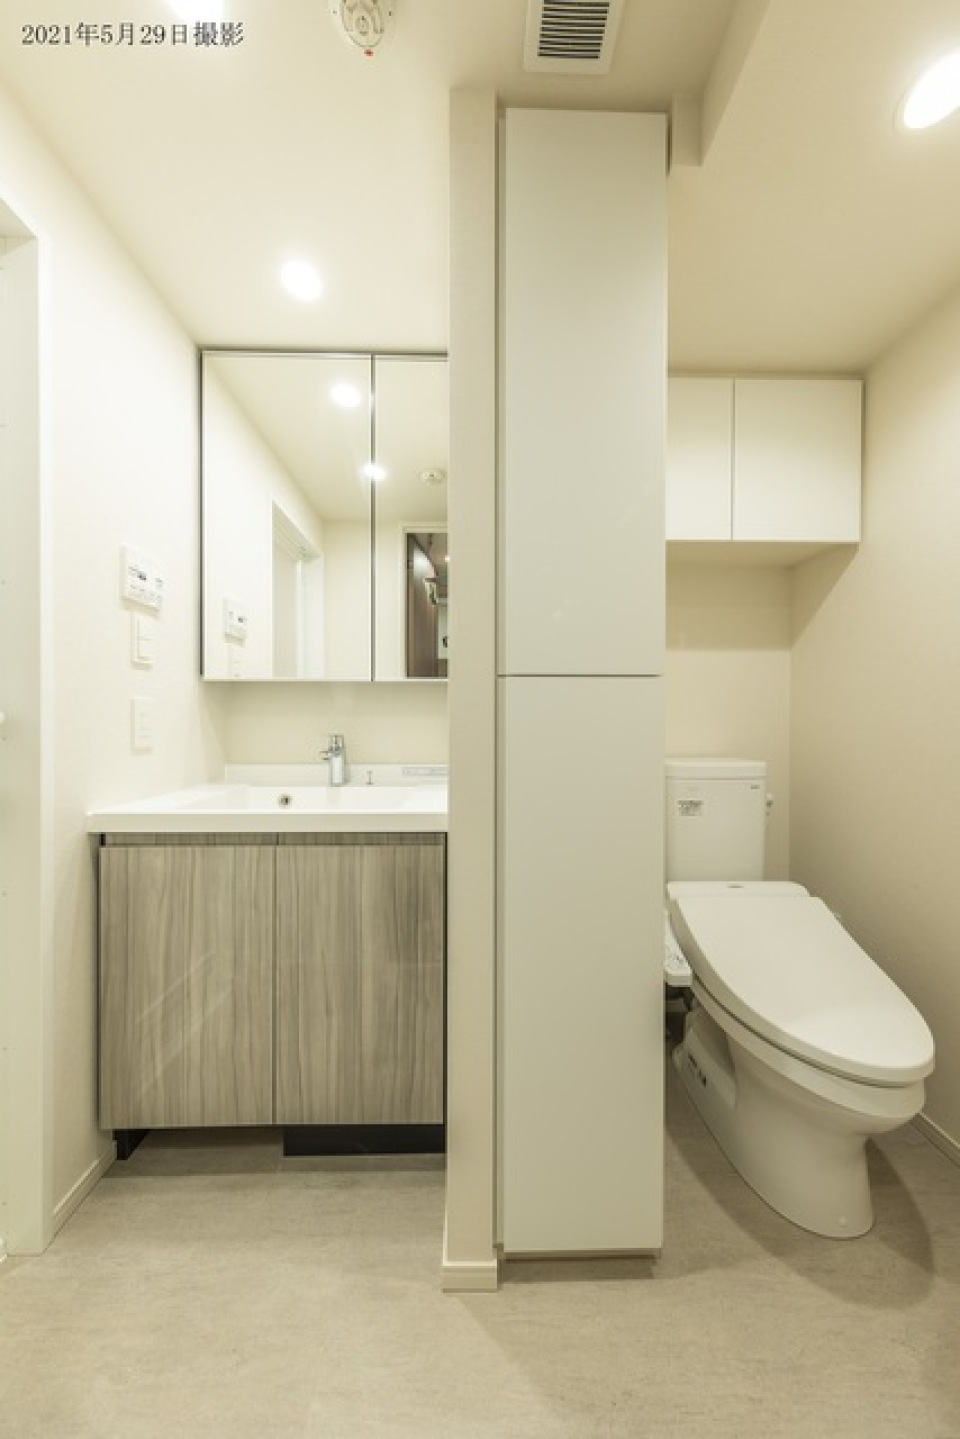 洗面台とトイレは収納棚で隔てられています。
※写真は同タイプ住戸です。